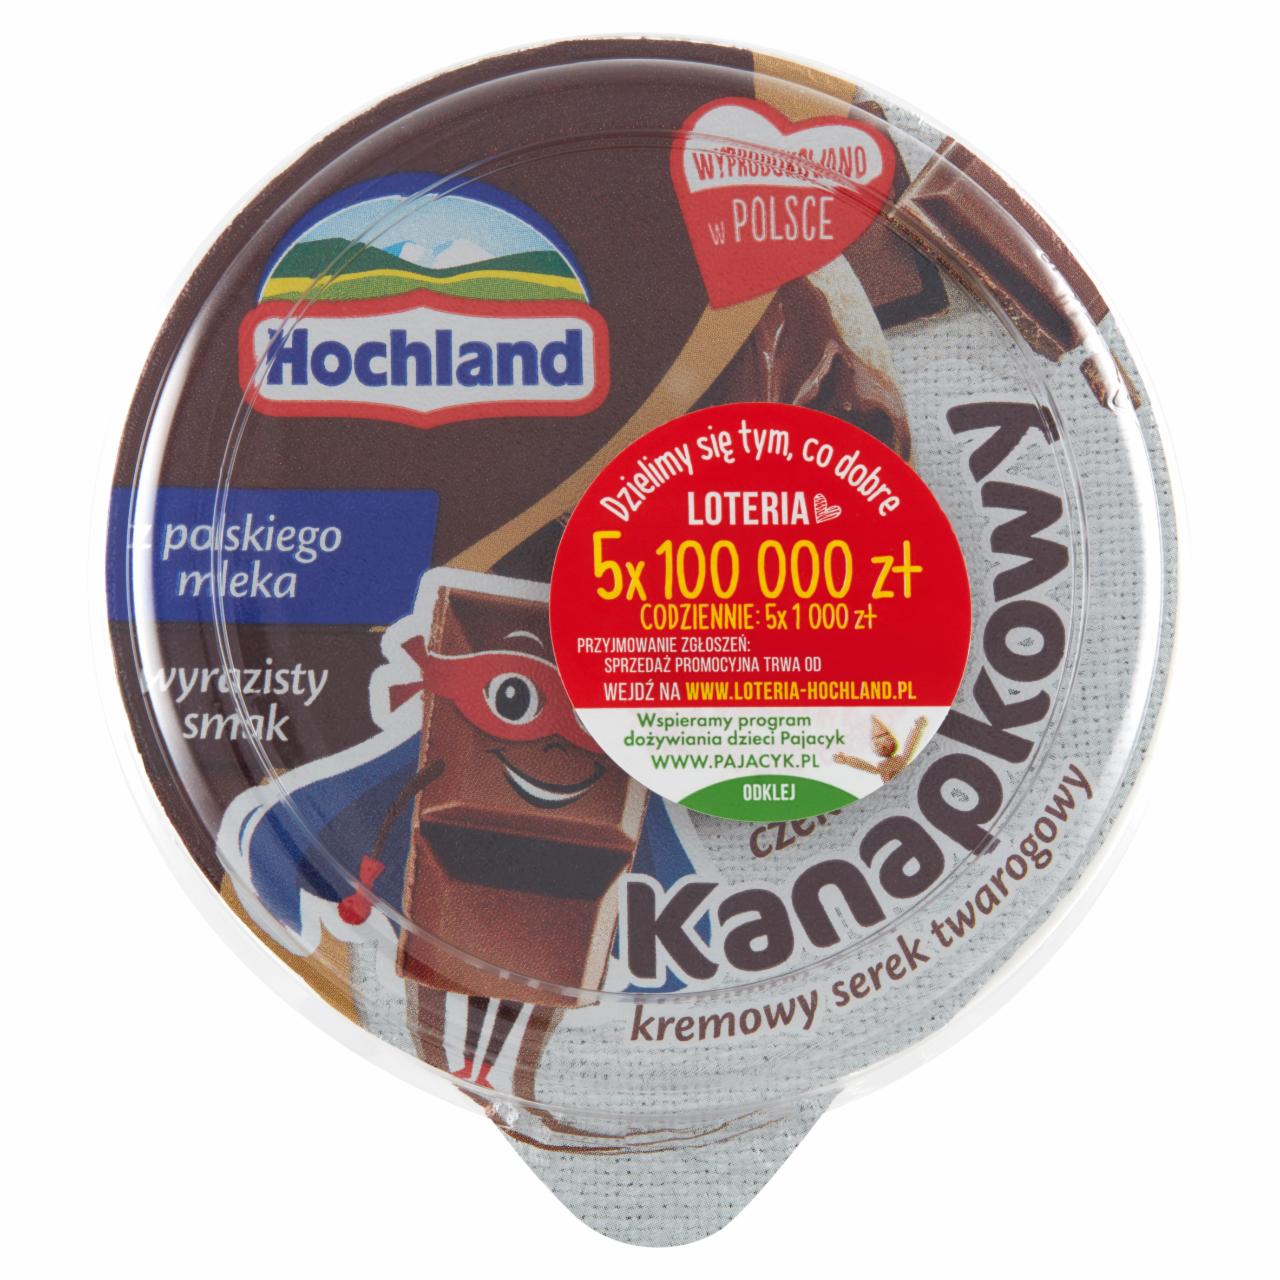 Zdjęcia - Hochland Kanapkowy kremowy serek twarogowy czekoladowy 130 g